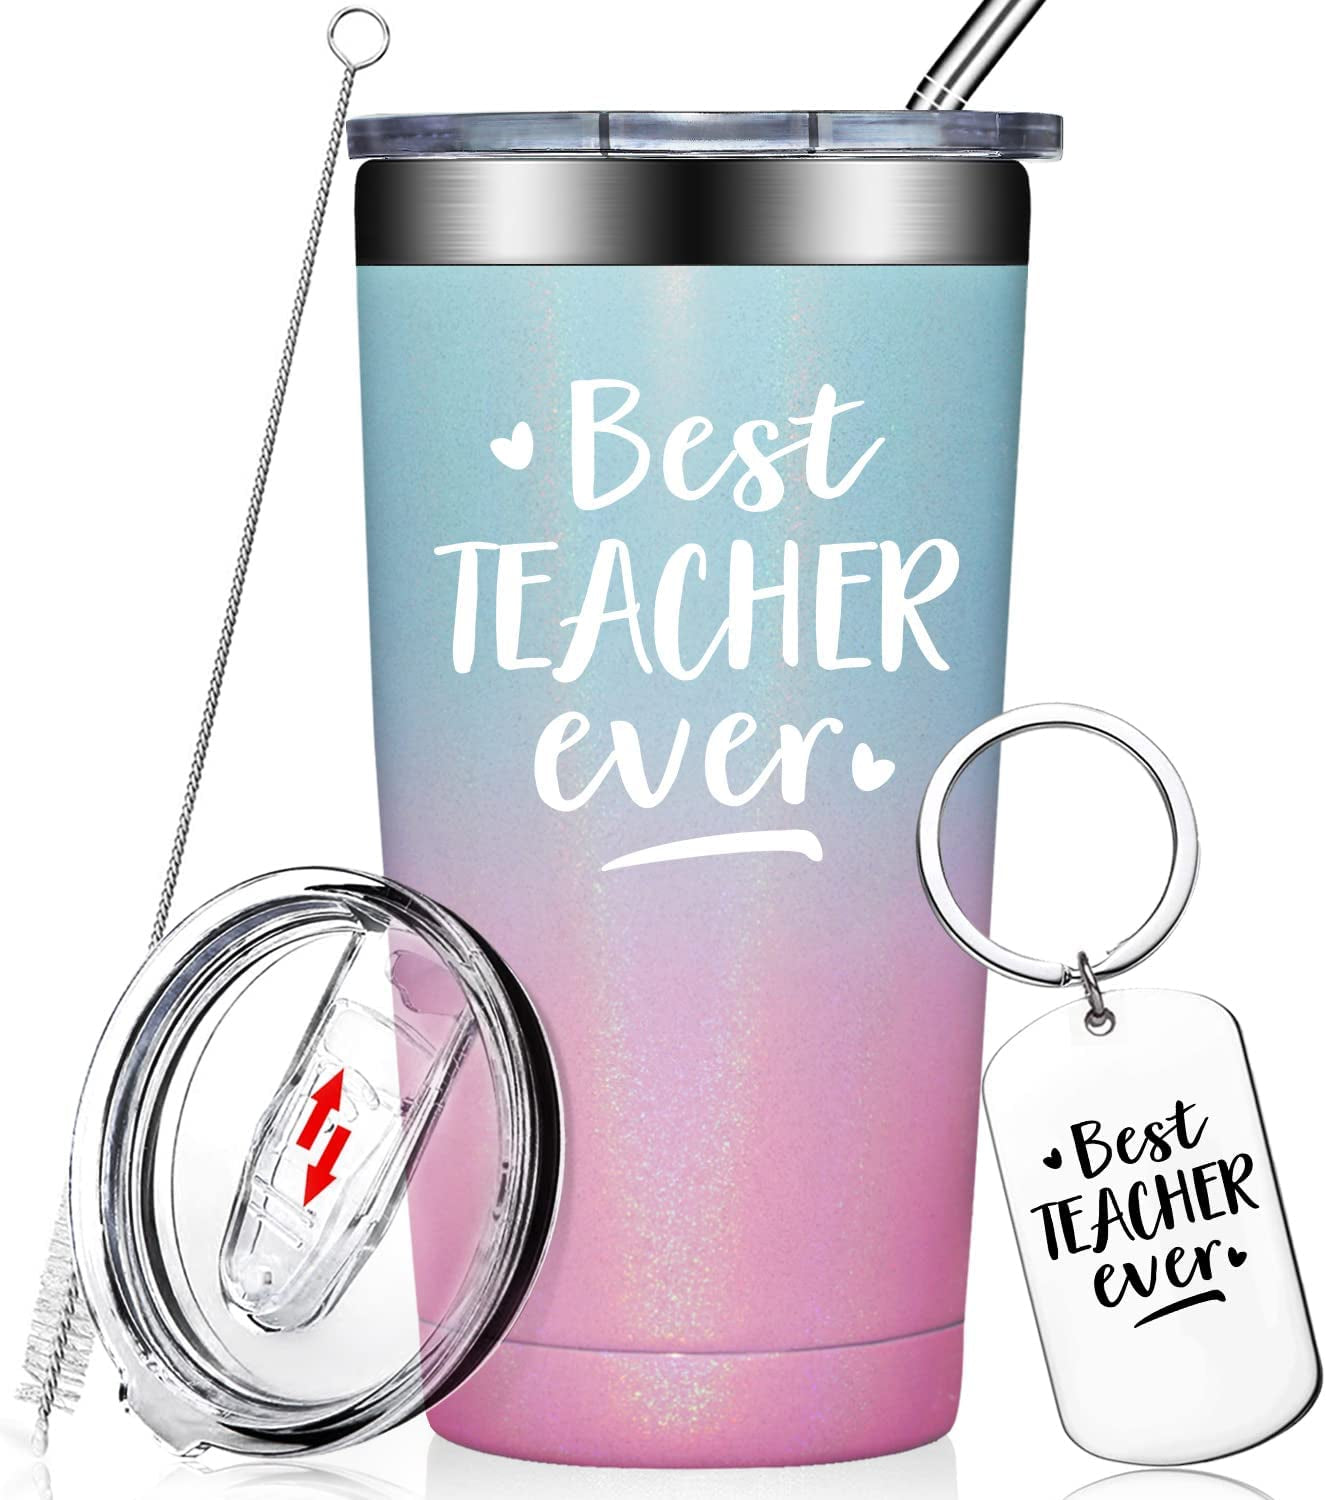  Best Teacher Ever - Teacher Appreciation Gifts, Teacher Gifts for Women, End of Year Teacher, Retirement Gifts - Teacher Gifts from Student, Teachers Day- Tumbler Cup